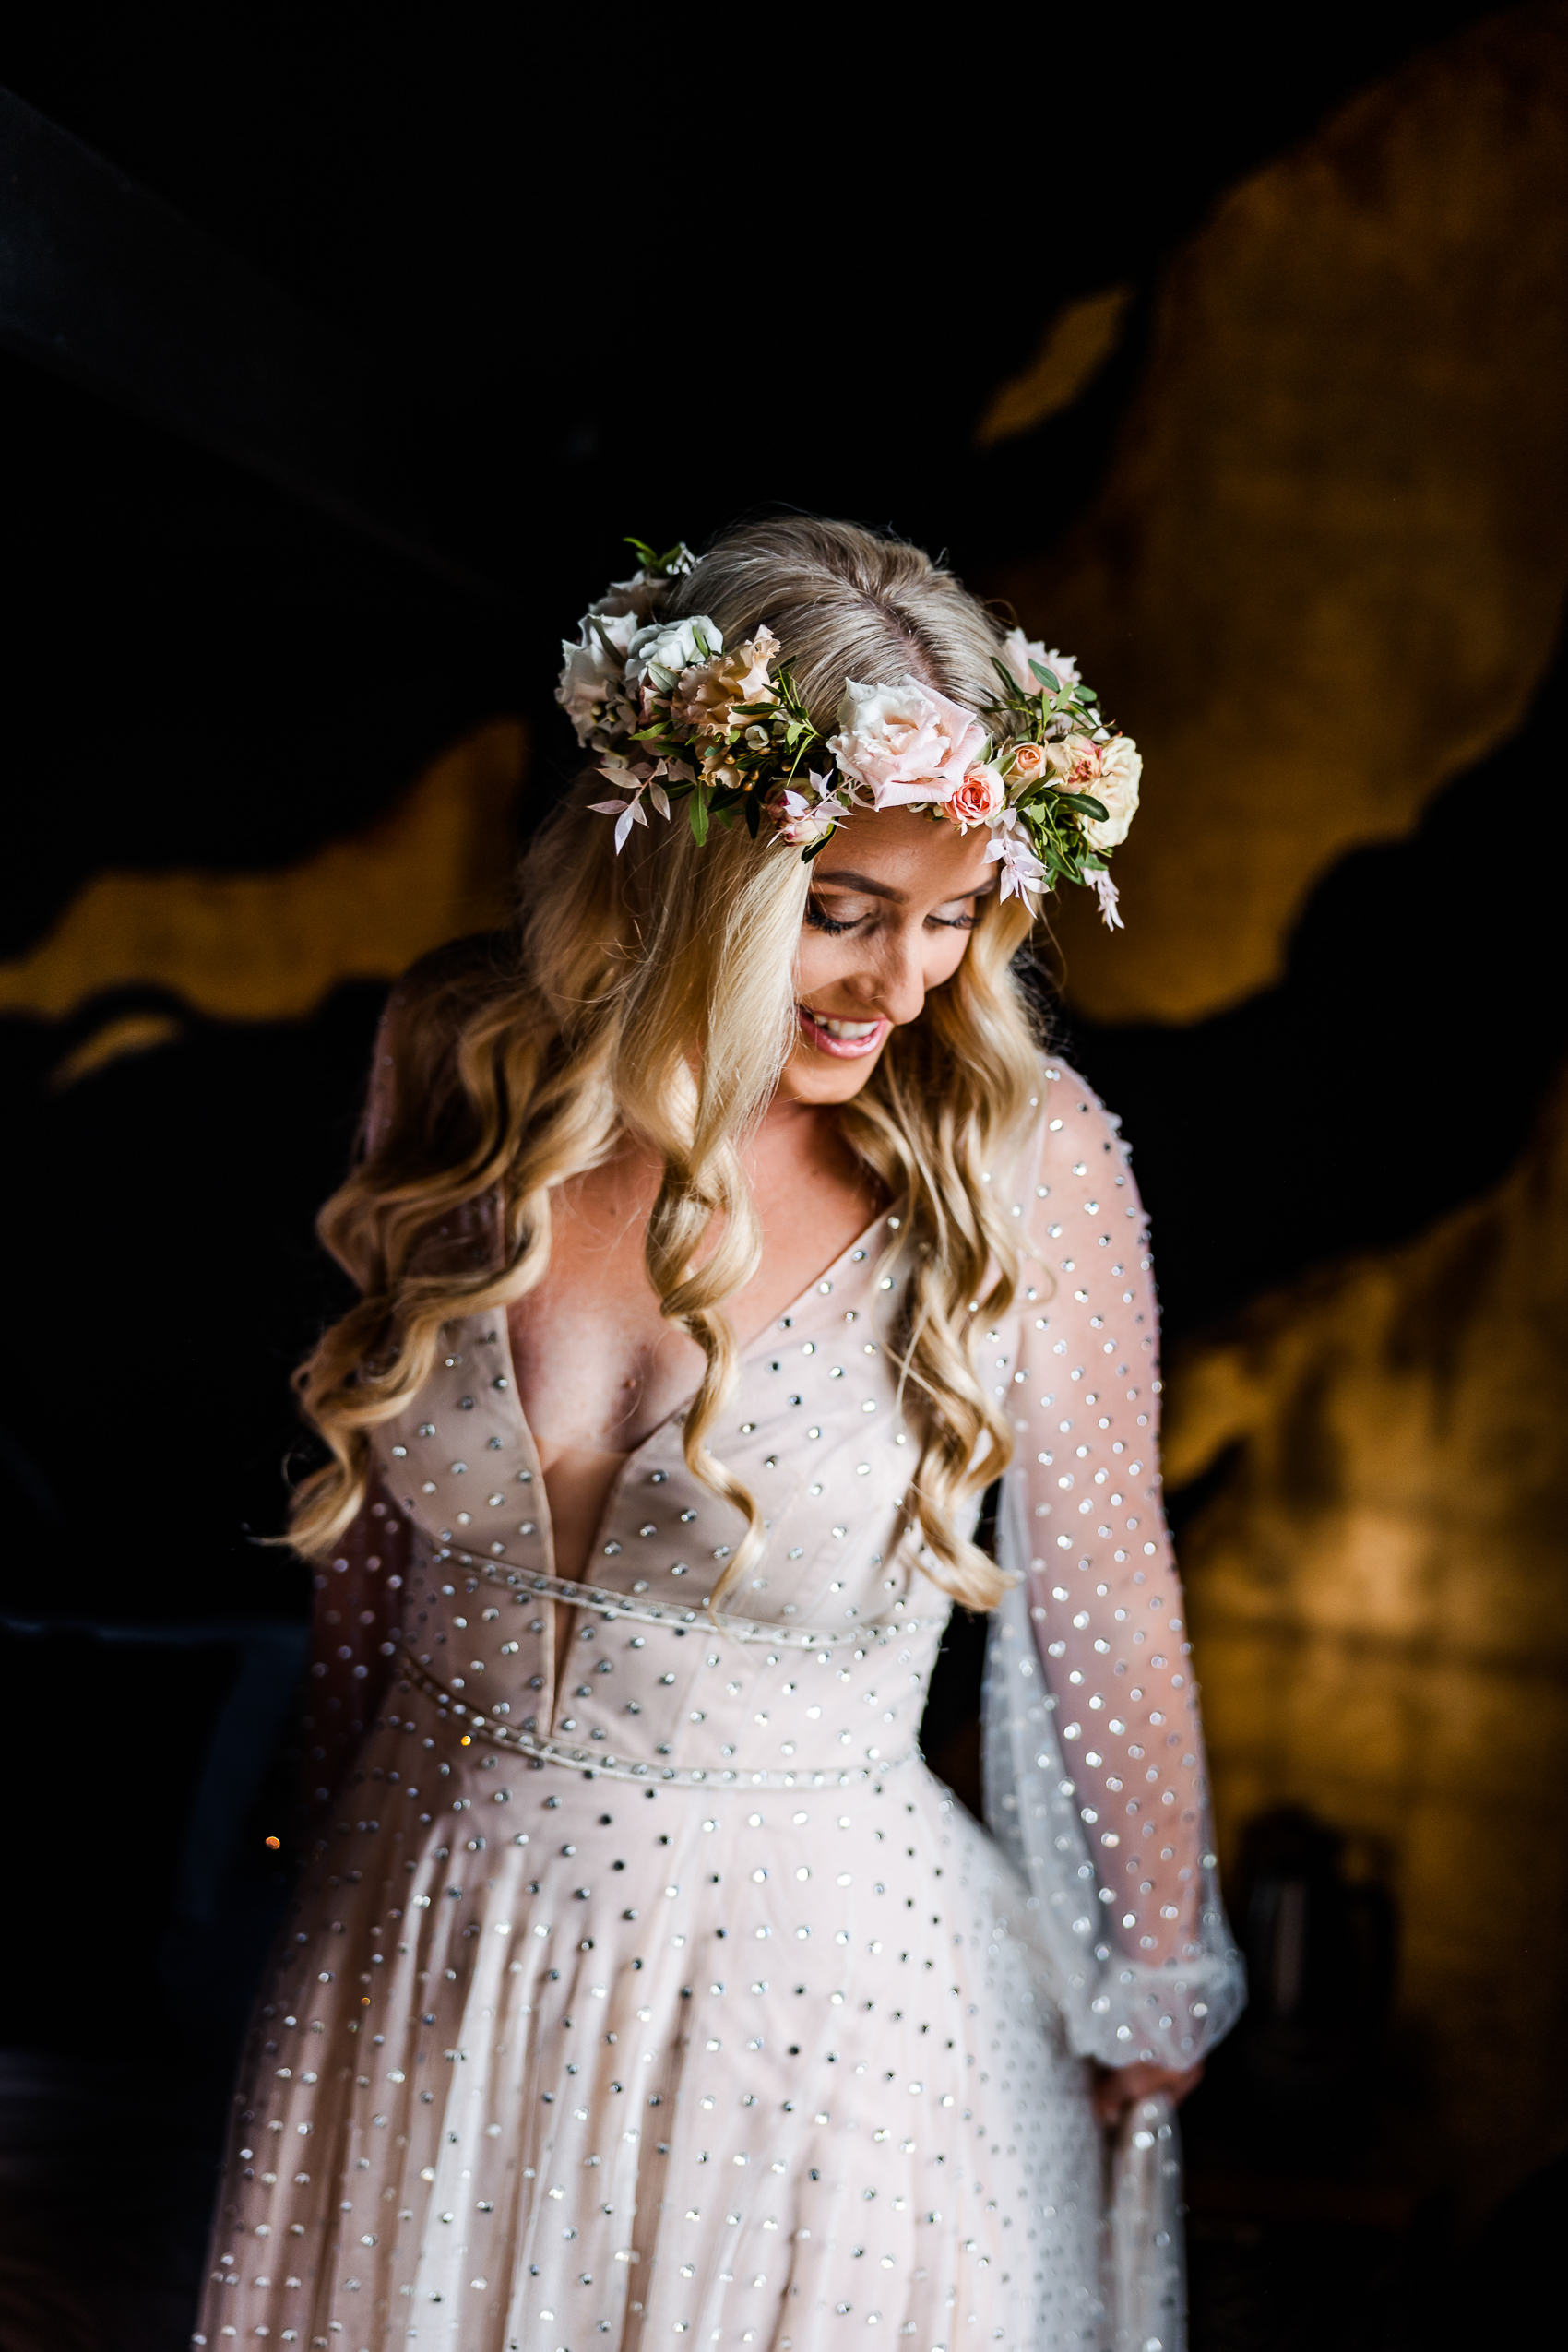 Bride in flower crown getting dressed